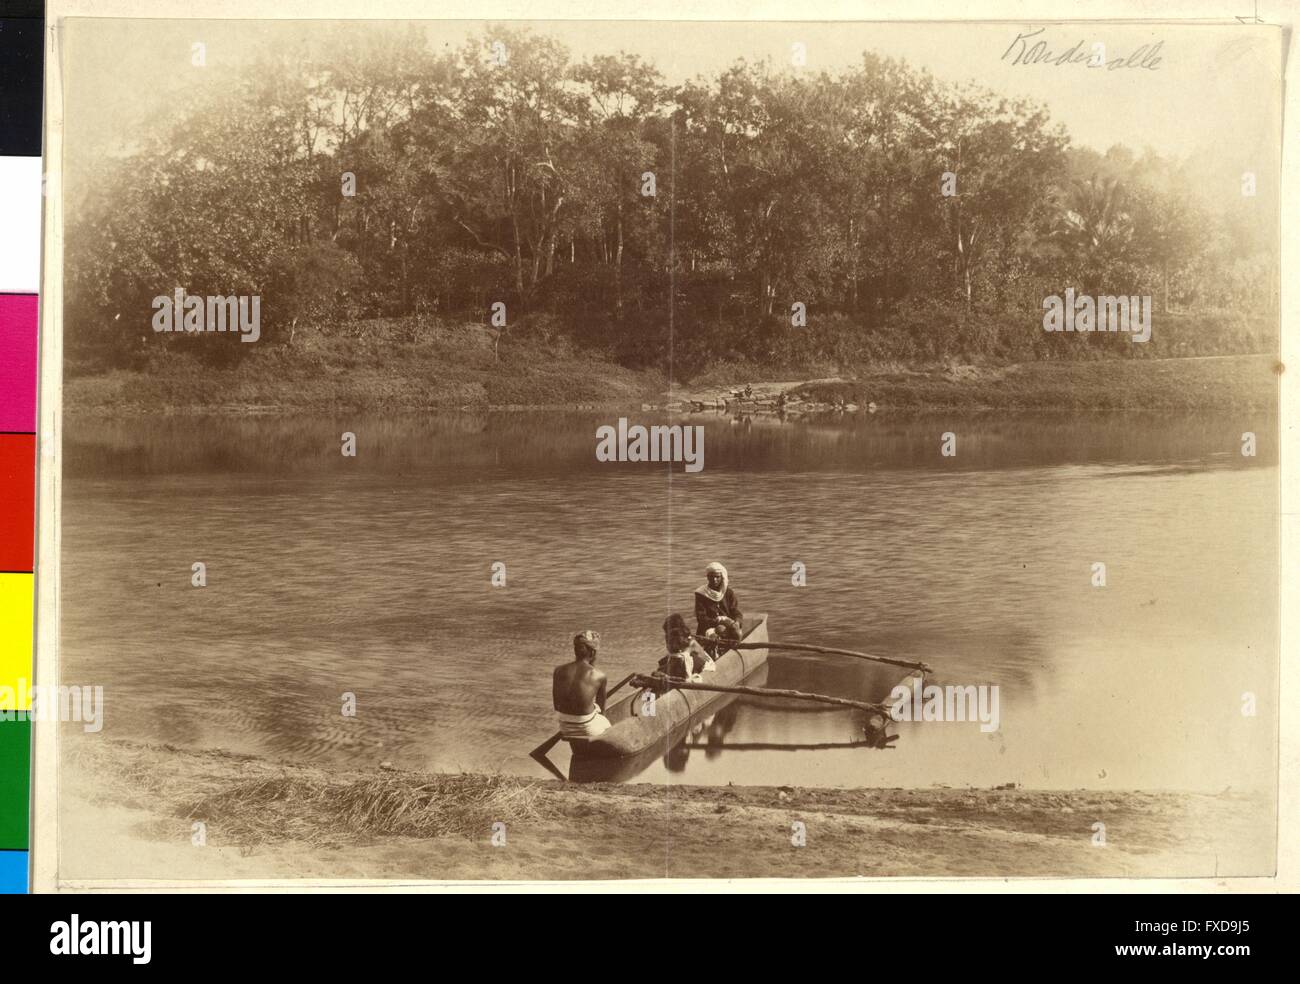 Kanu auf Fluss in Indien Foto Stock